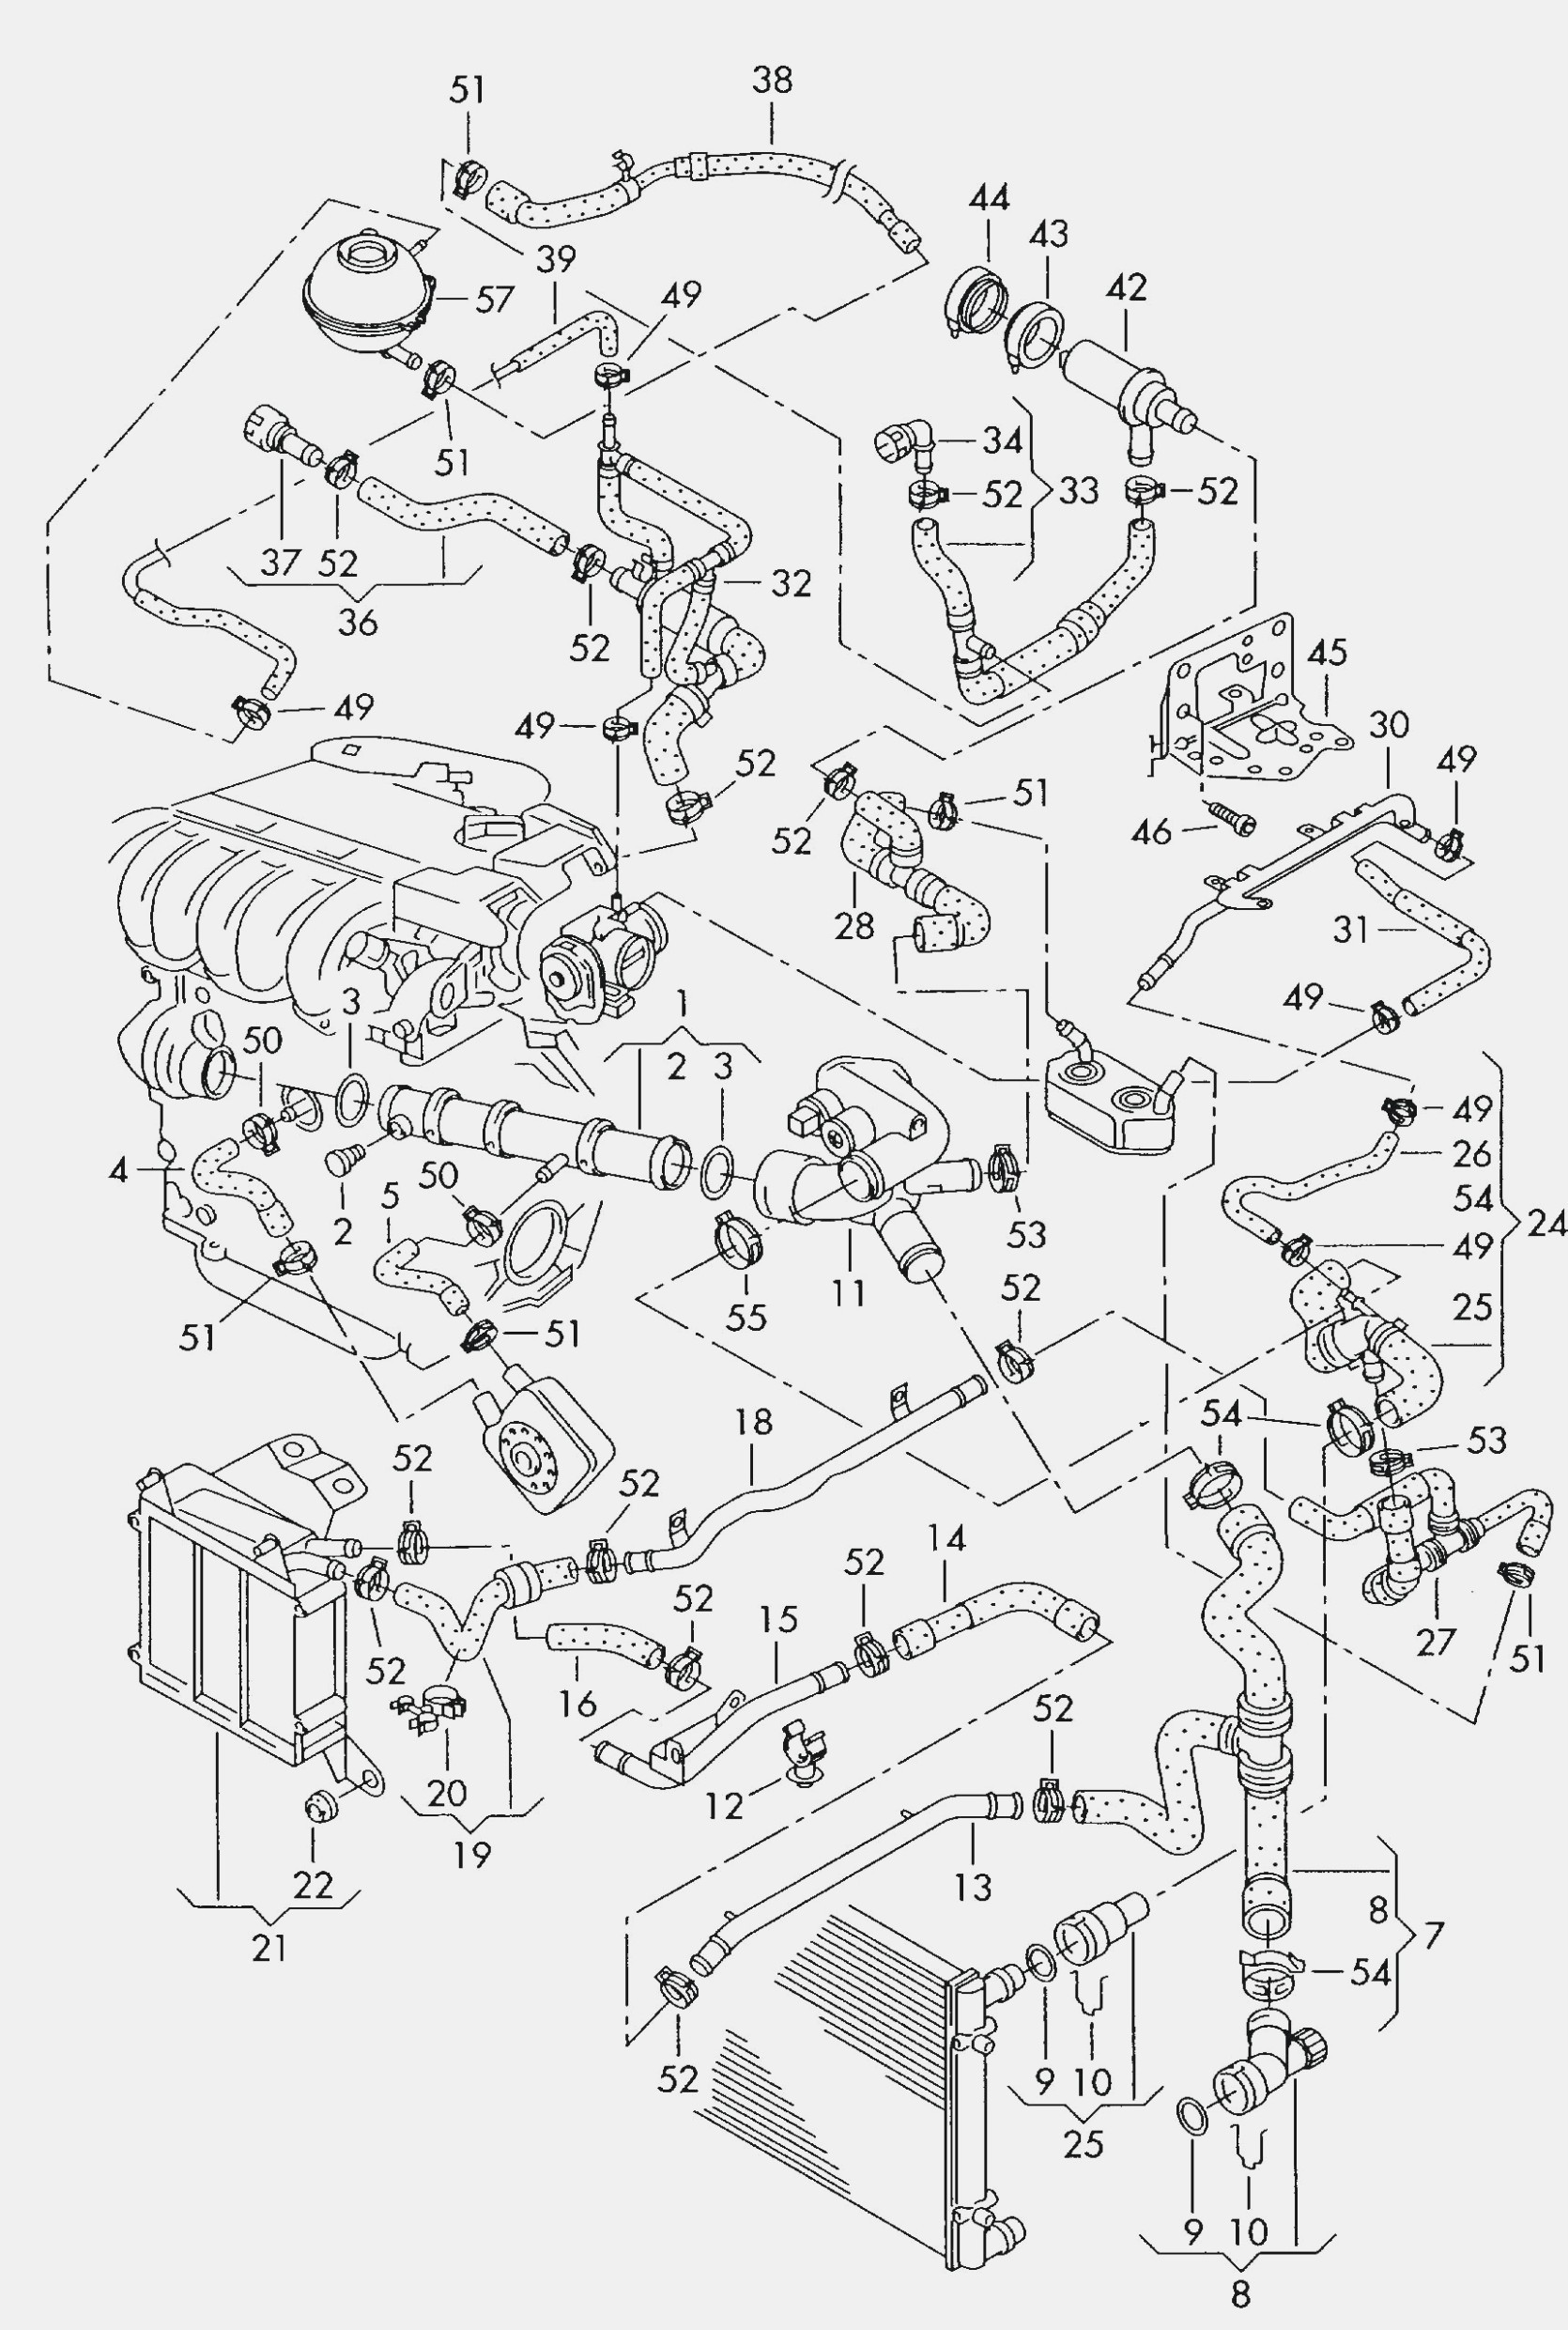 2000 Jetta Engine Diagram 95 Vw 2 0 Jetta Engine Diagram Wiring Diagram New Of 2000 Jetta Engine Diagram